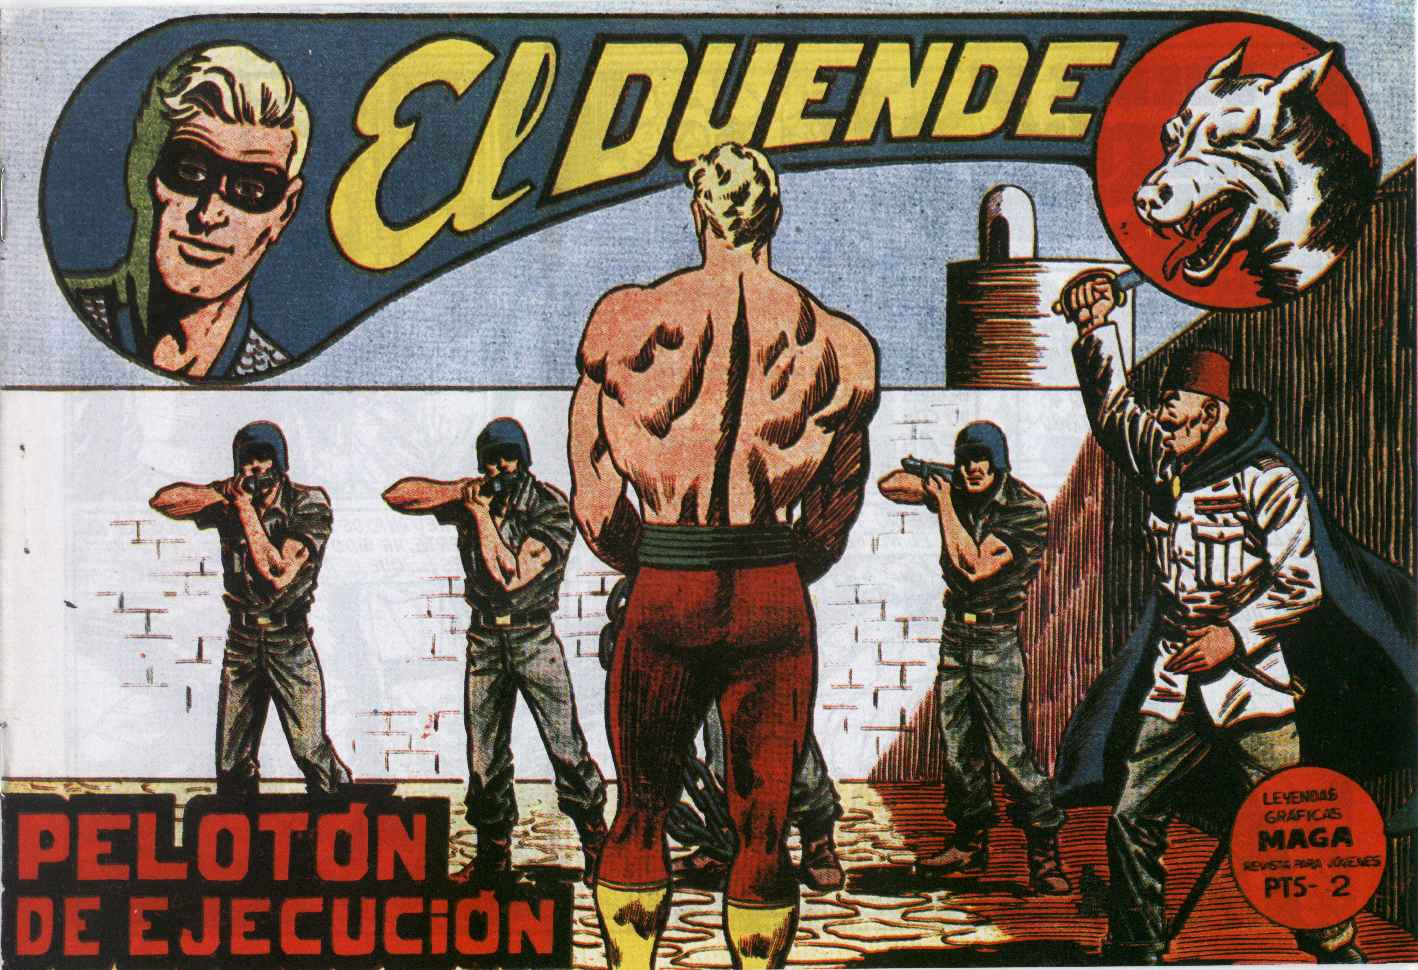 Comic Book Cover For El Duende 26 - Pelotón de ejecución